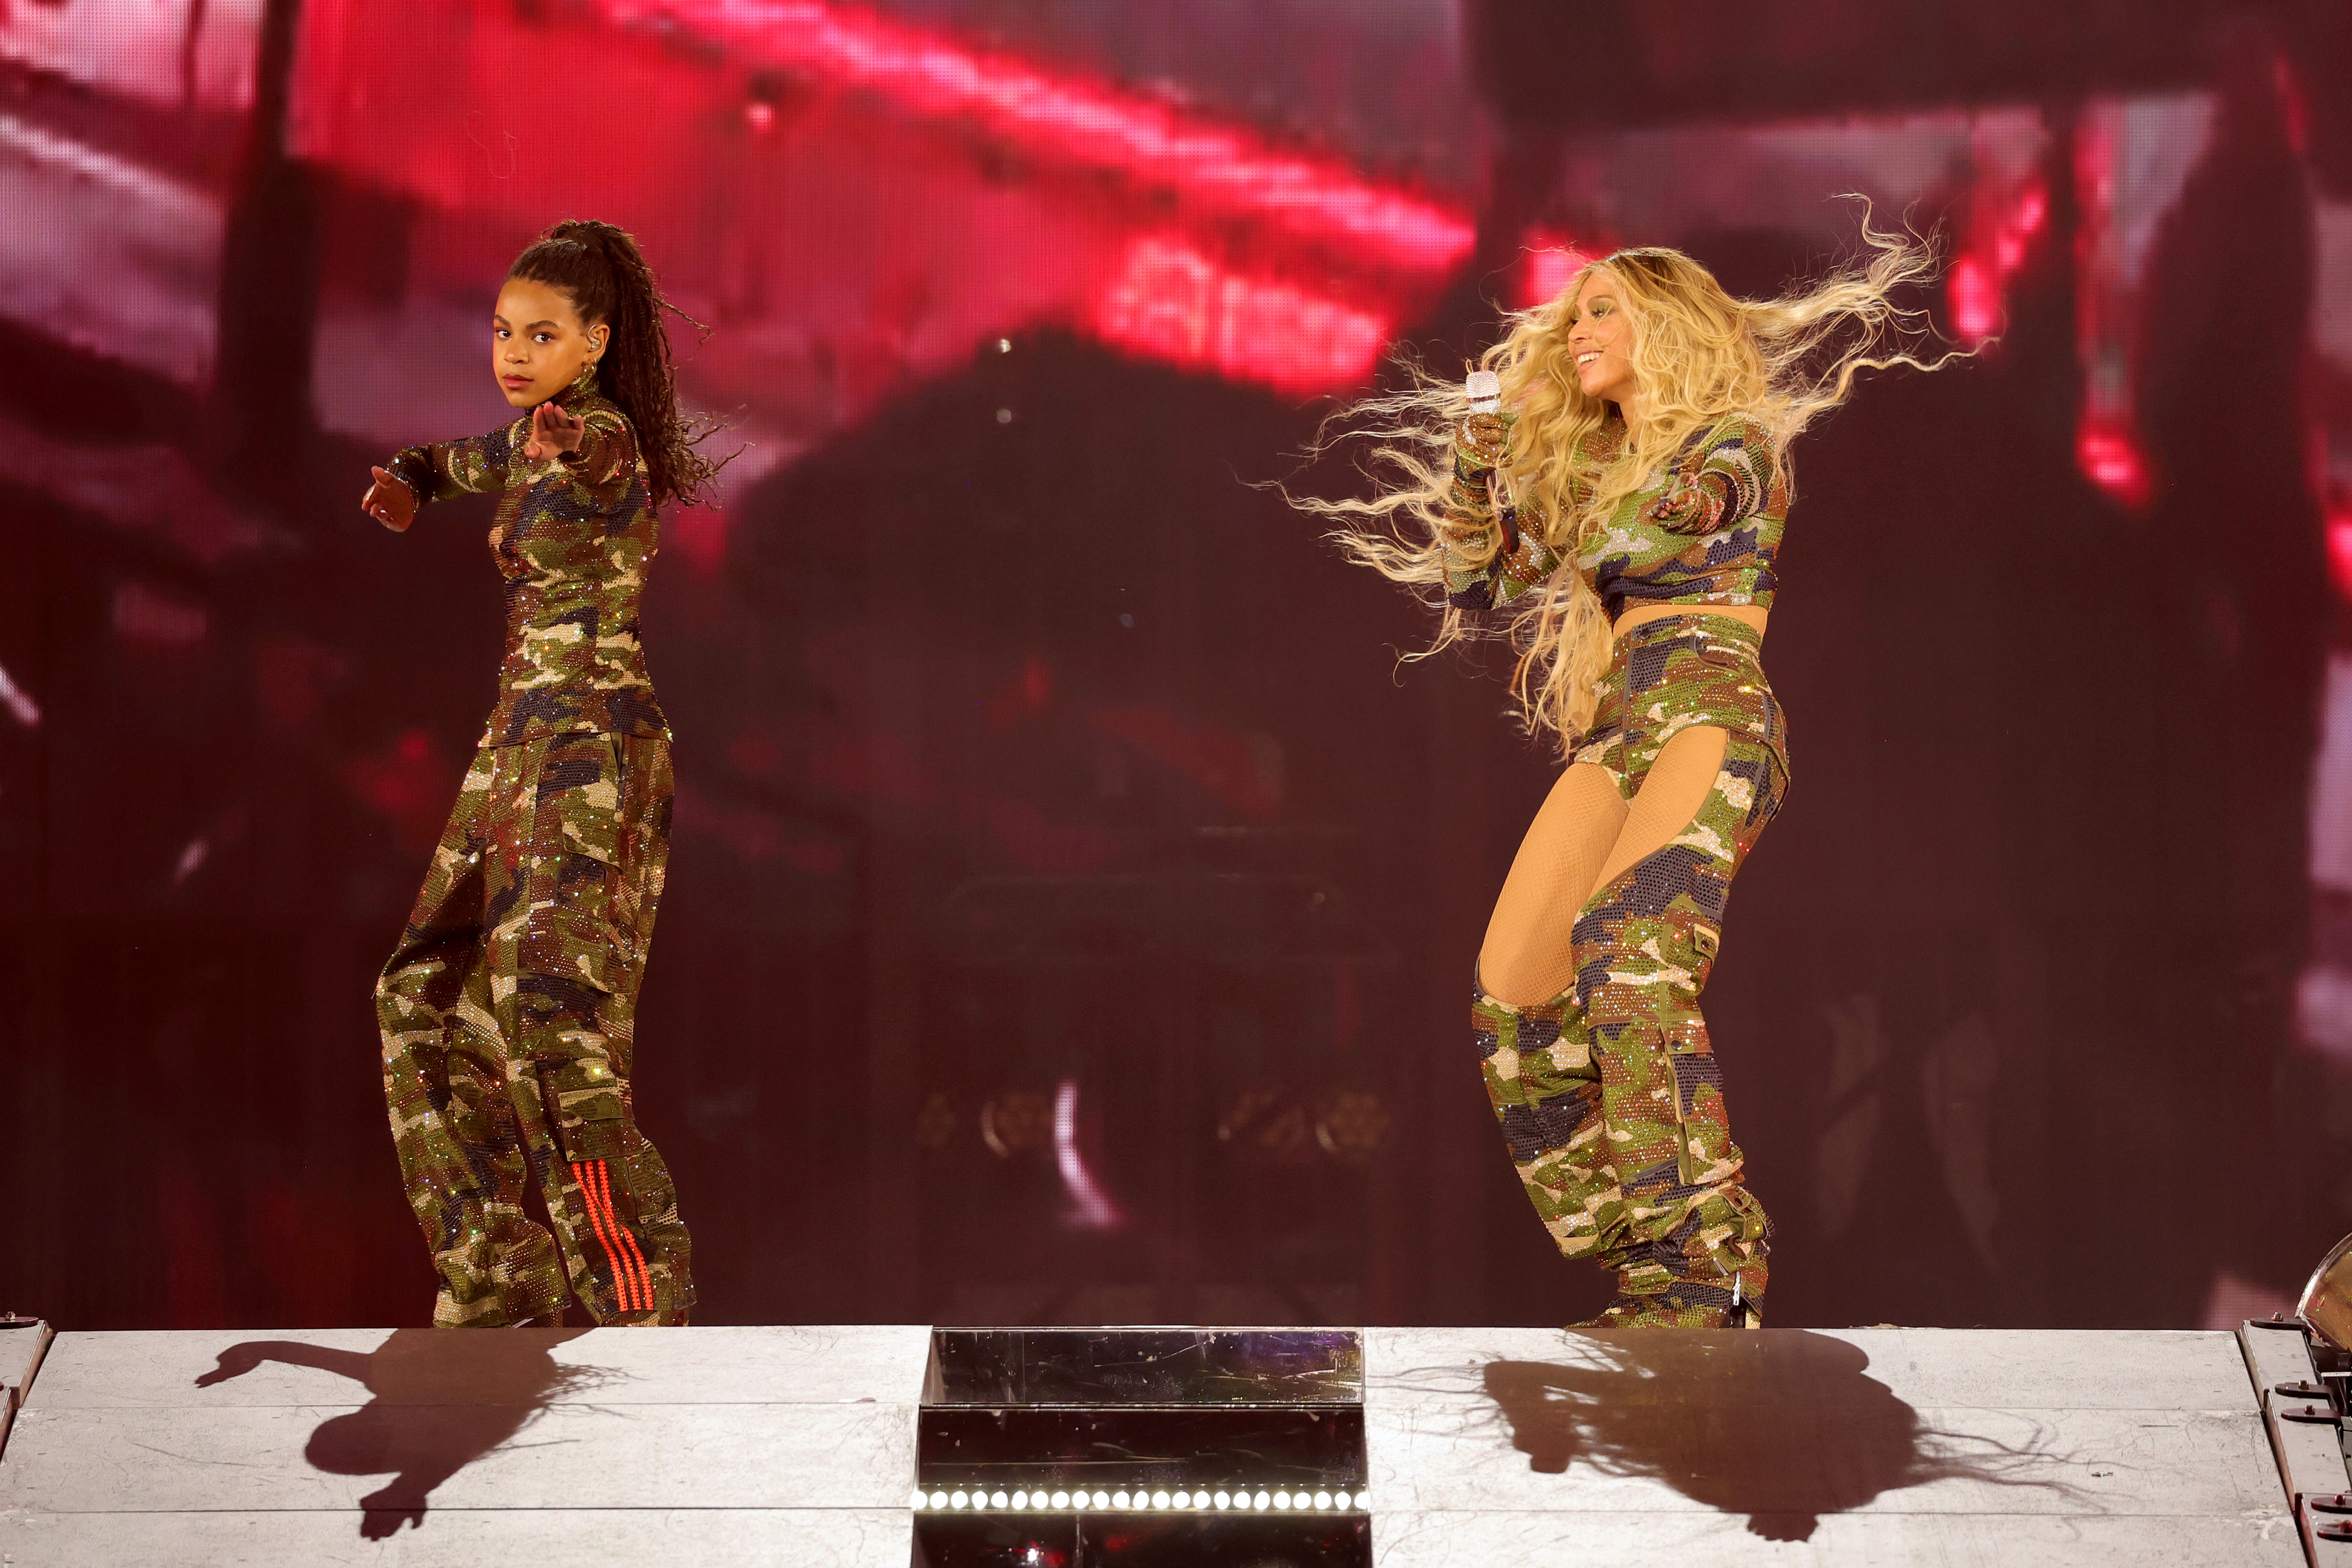 Blue Ive Carter y Beyoncé actúan en el escenario durante la gira "Renaissance World Tour" el 11 de agosto de 2023 en Atlanta, Georgia | Foto: Getty Images